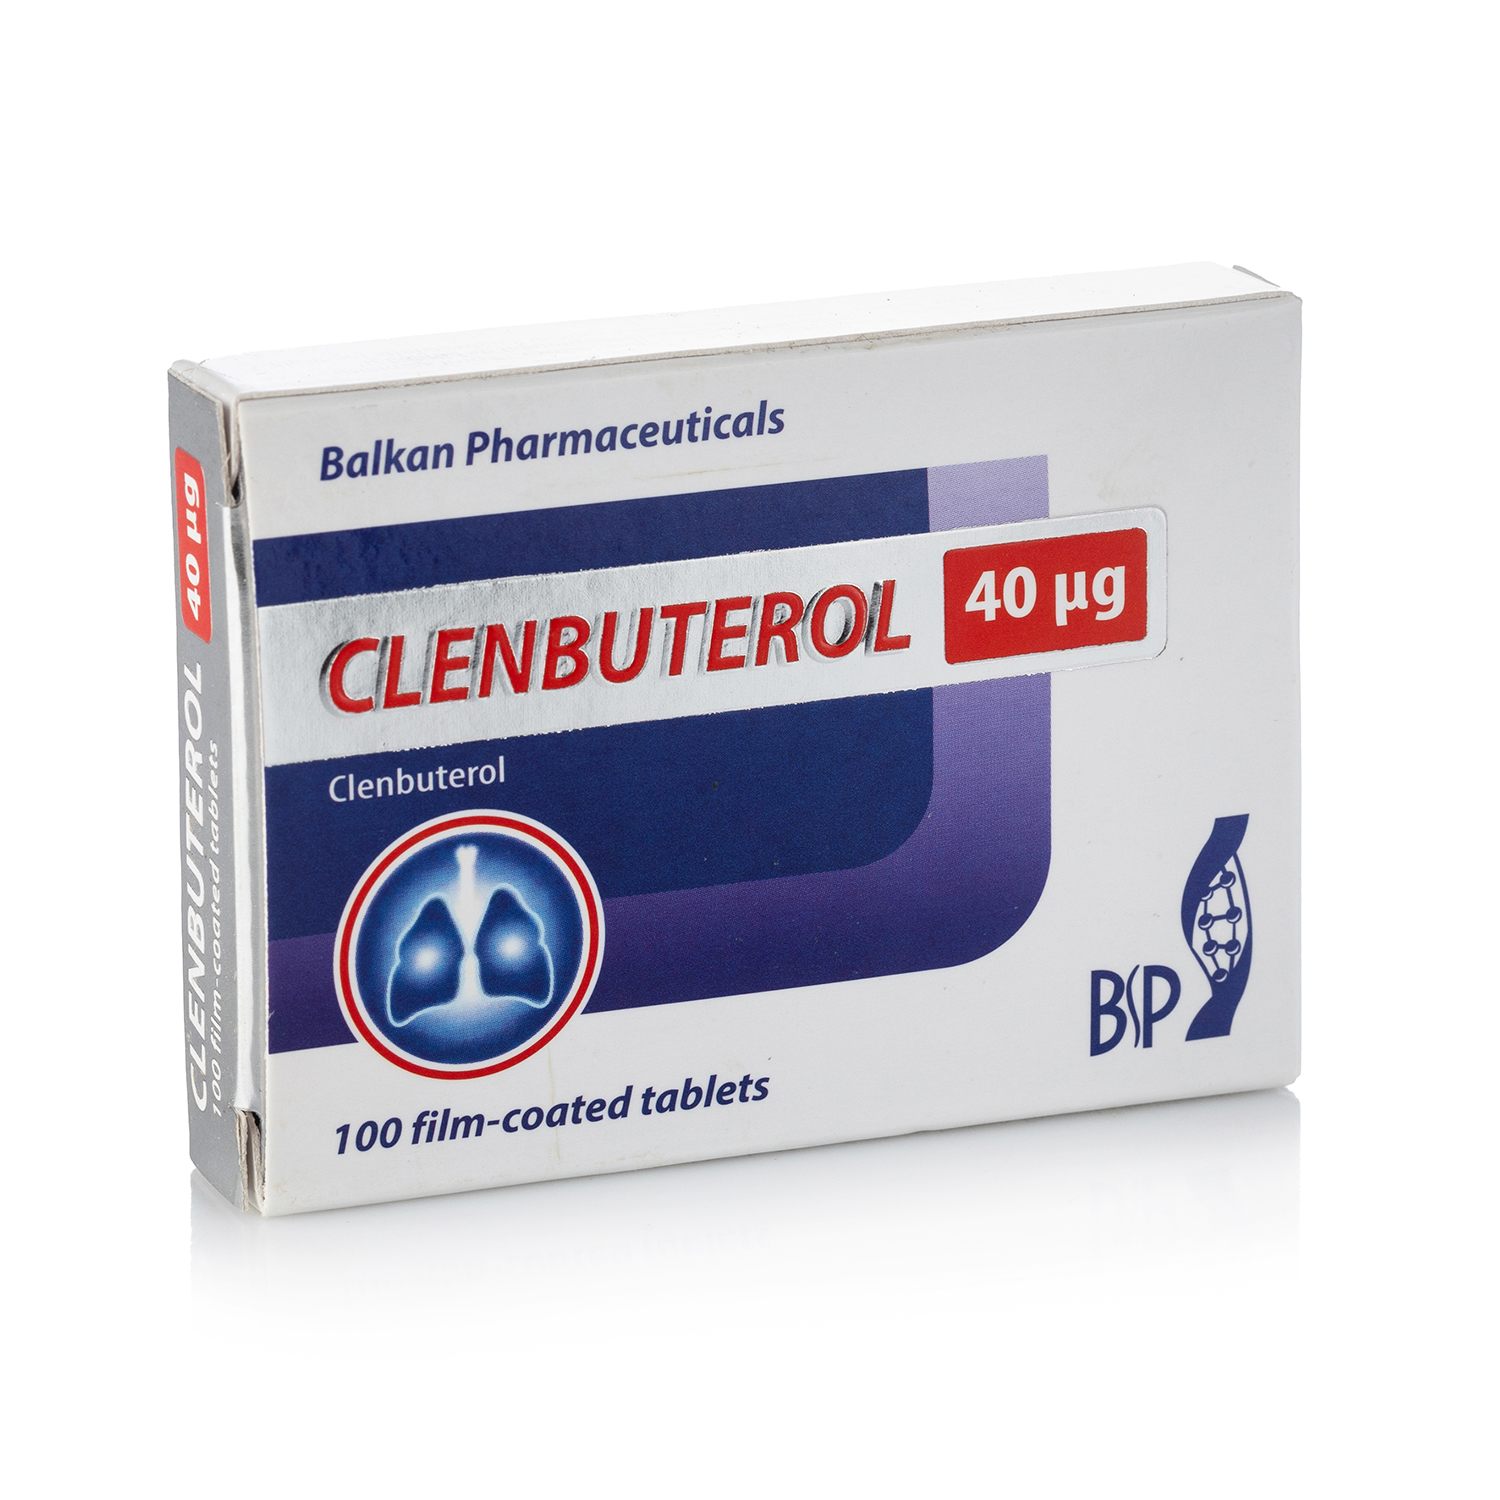 Clenbuterol 100 табл. х 40 мкг.